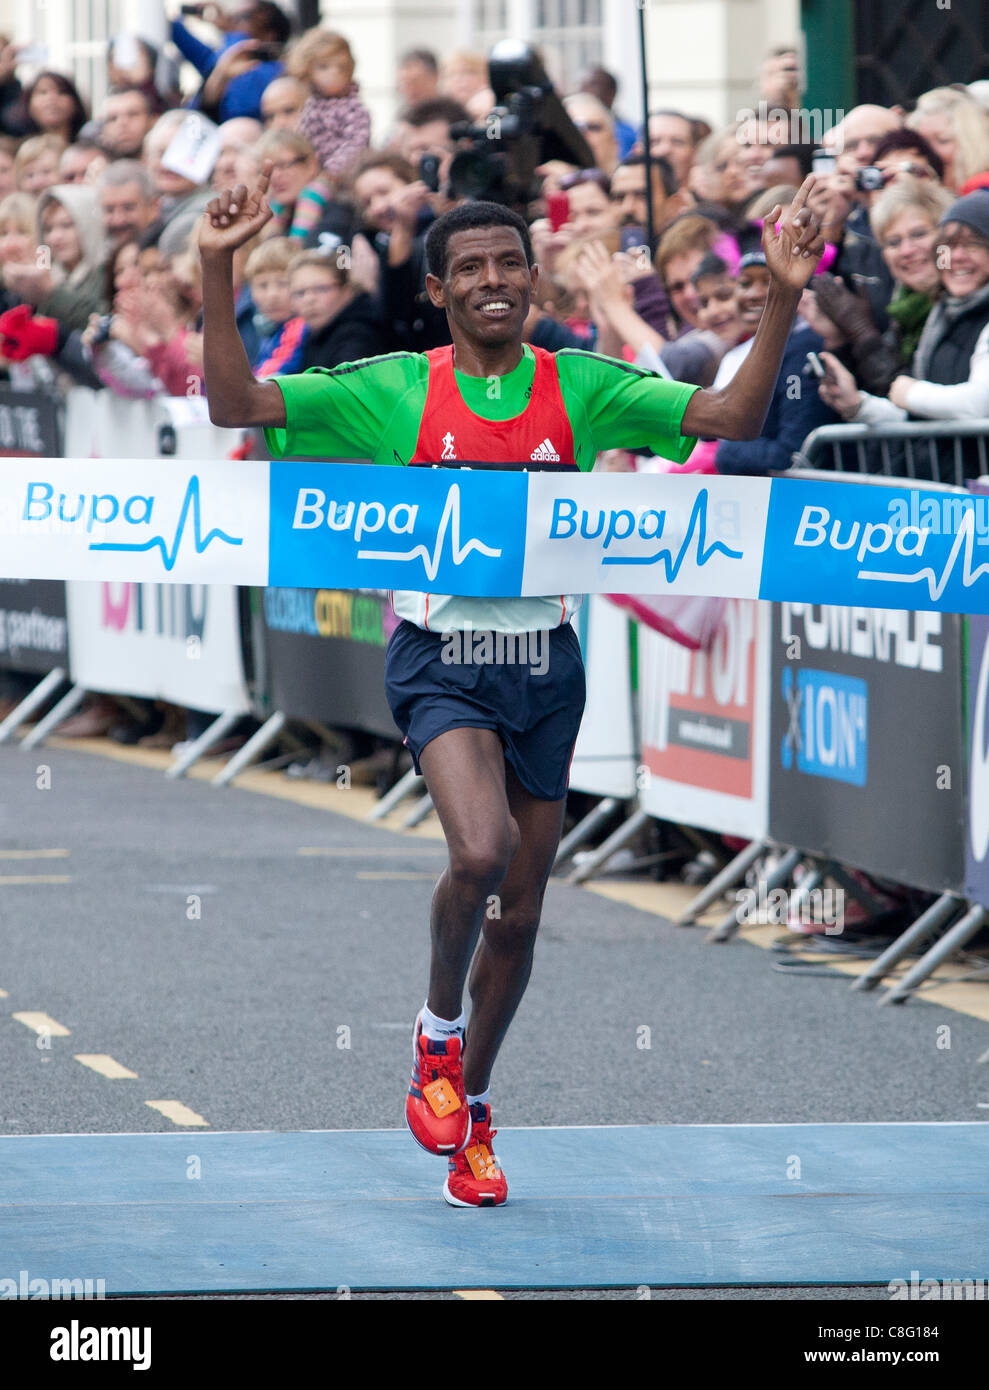 Corredor etíope Haile Gebrselassie gana el Bupa Gran Birmingham,  Birmingham, West Midlands, Reino Unido. La Media Maratón fue correr  alrededor de las calles de Birmingham Fotografía de stock - Alamy